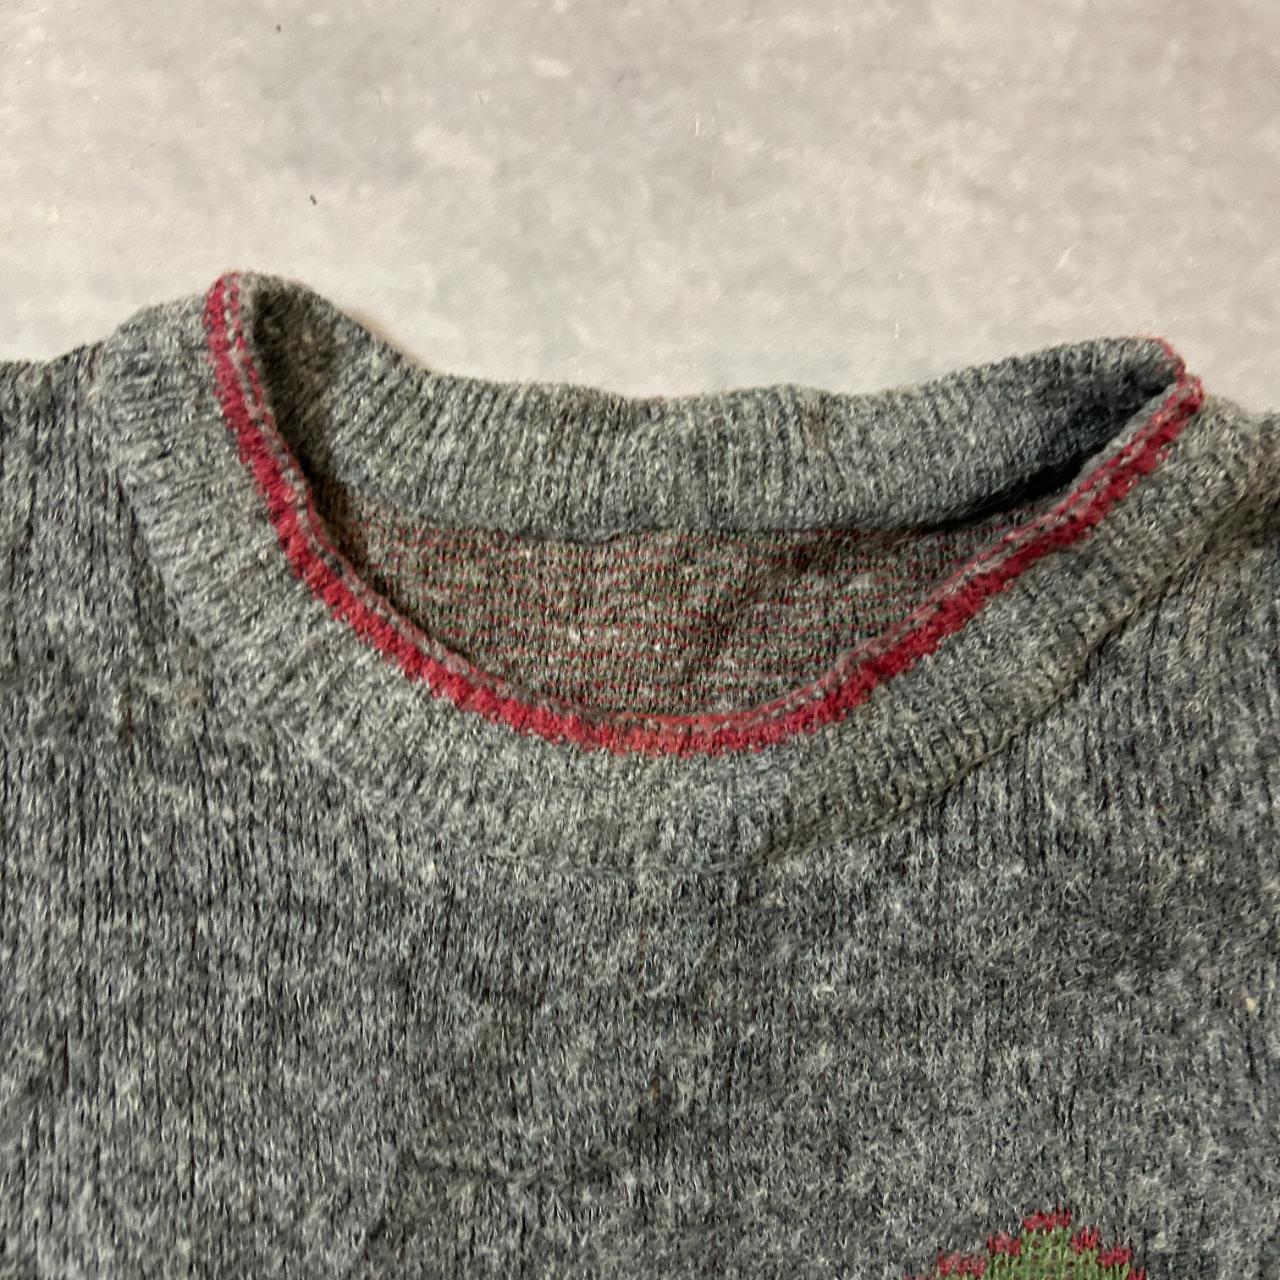 Vintage abstract knitted jumper Patterned Grandad... - Depop